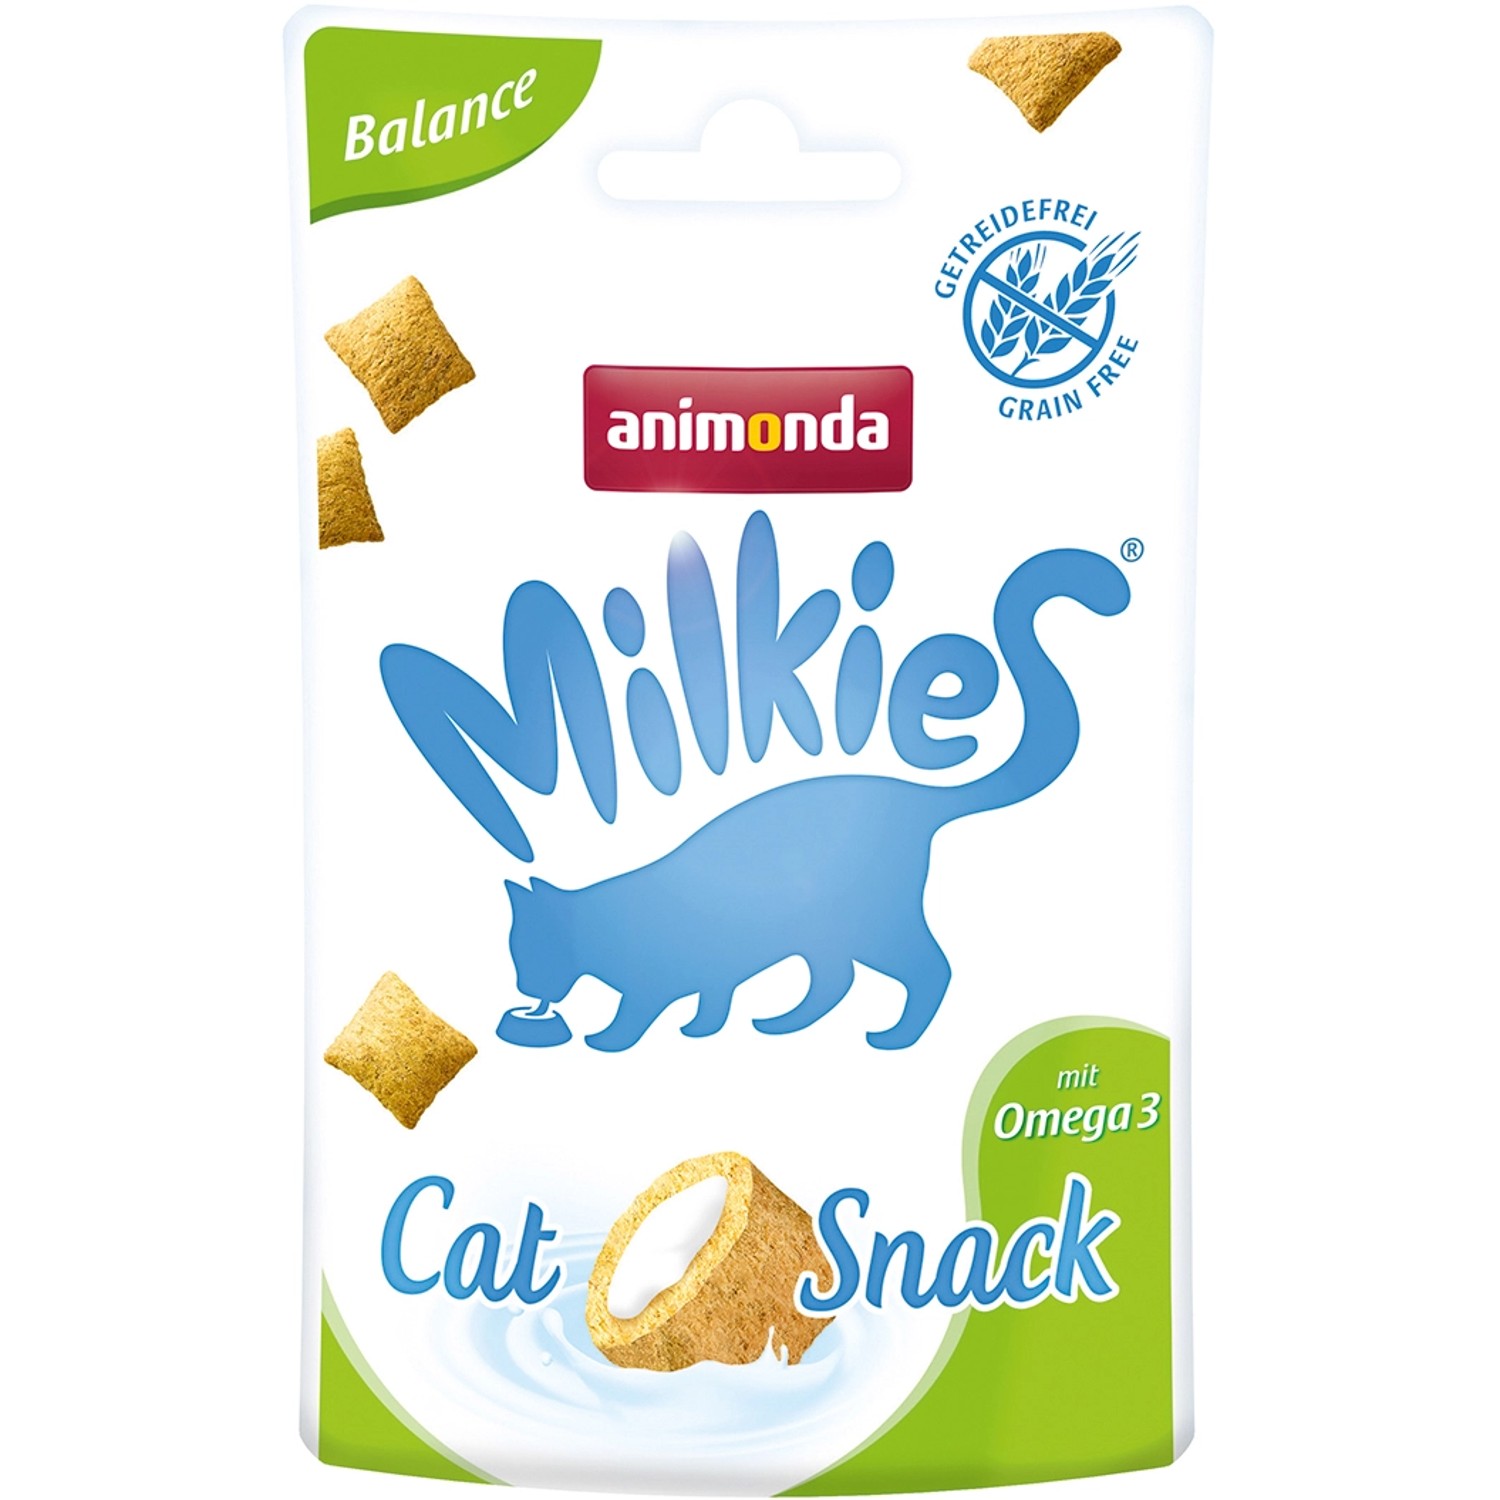 Animonda Katzensnack Milkies Knusperkissen Balance mit Omega 3 30 g